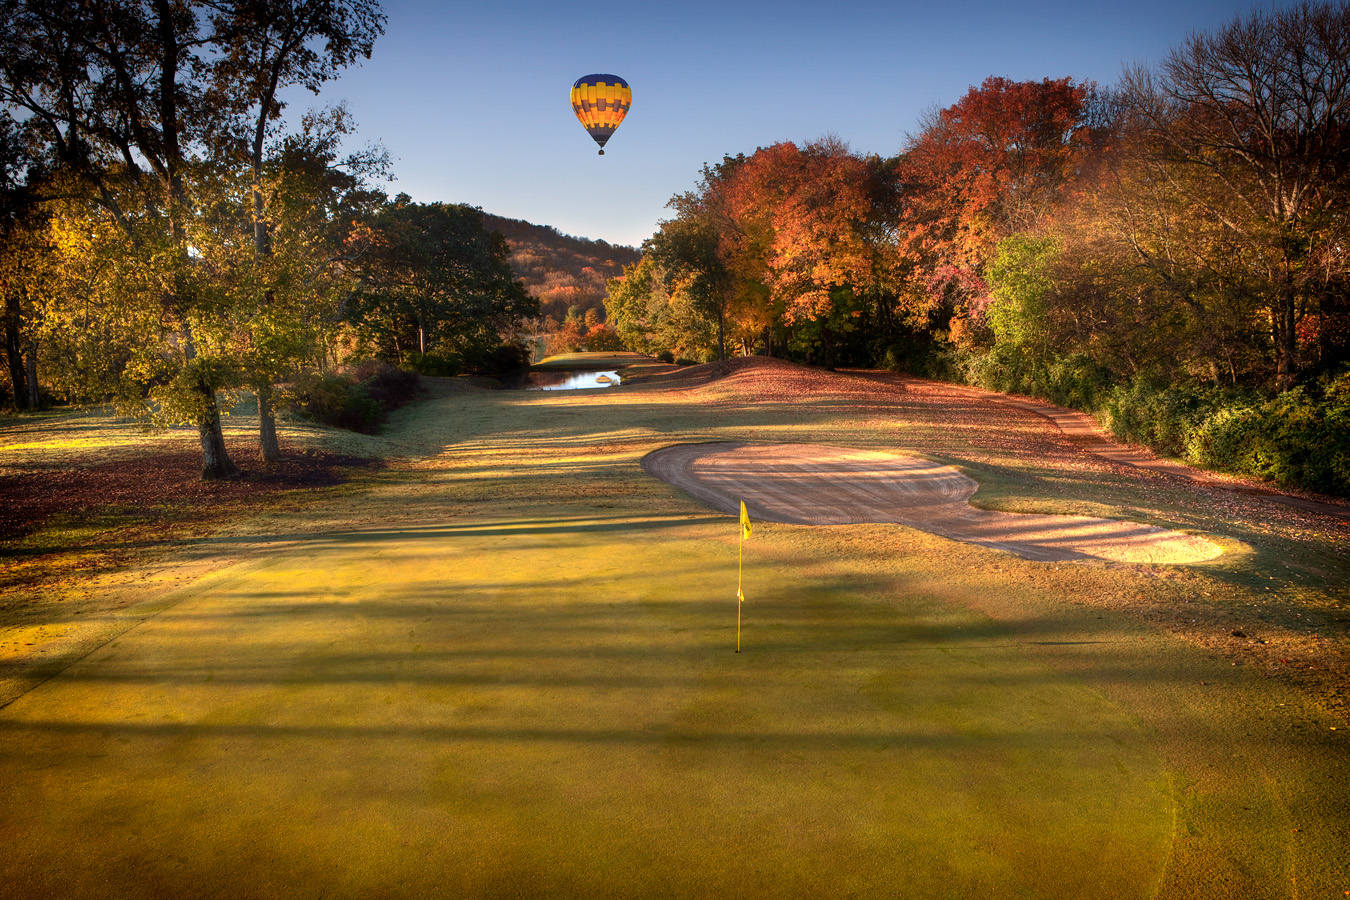 <span style="font-size:16px;">Nashville Golf 14th Hole</span> : Golf Landscapes : nick dantona fine art photography